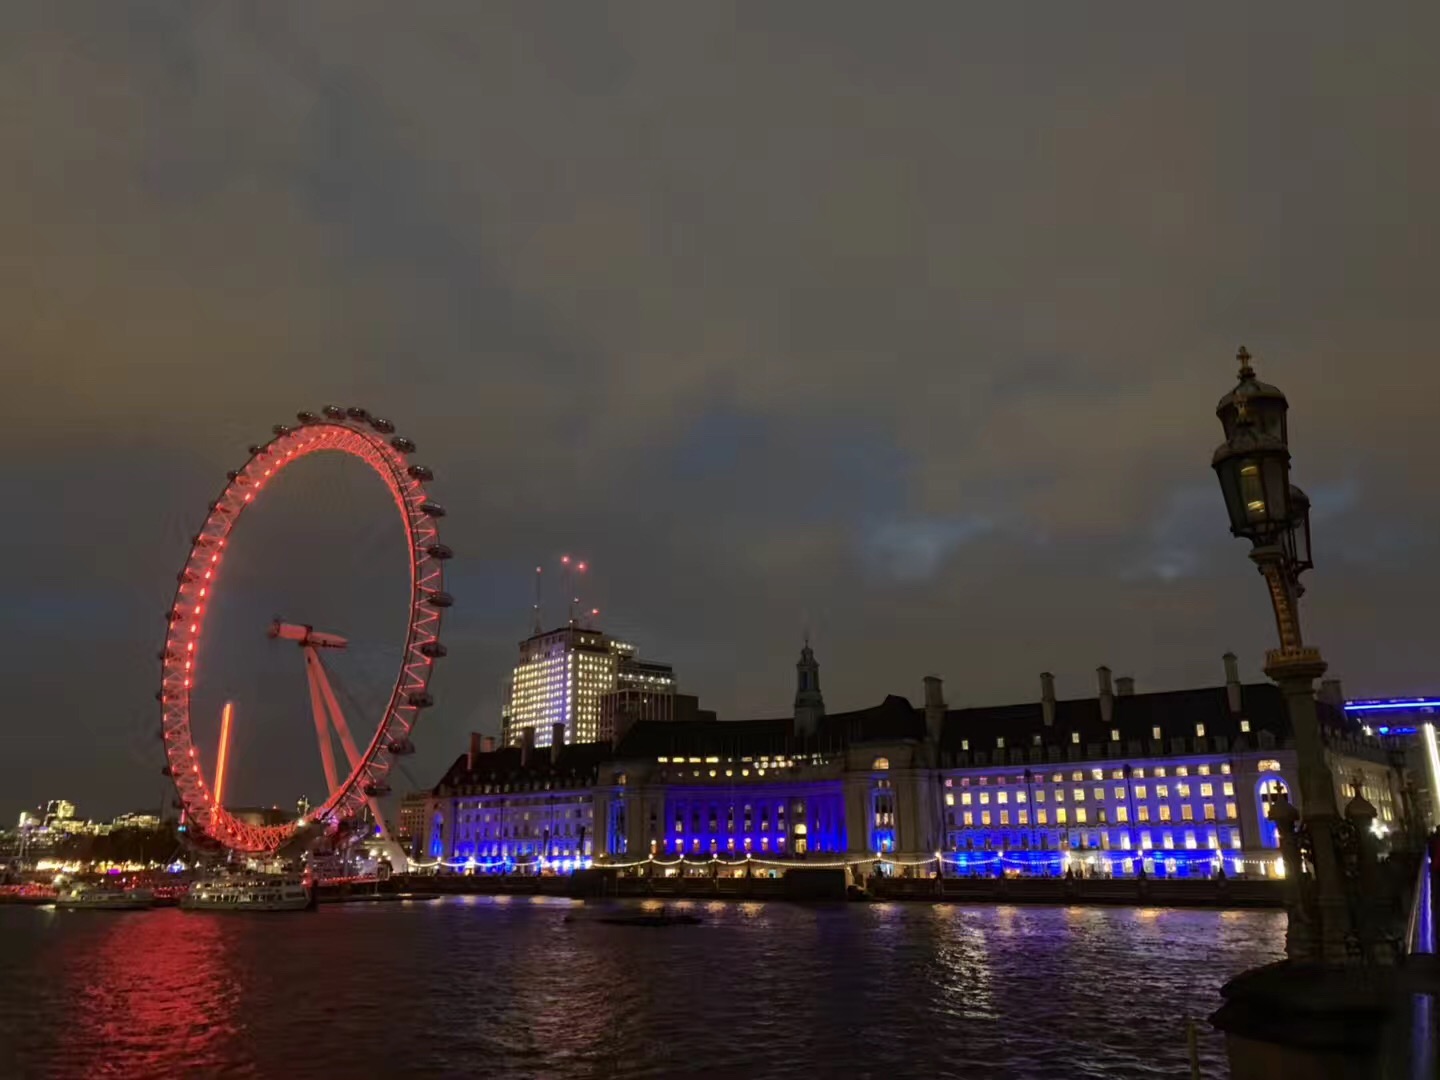 2019伦敦眼_旅游攻略_门票_地址_游记点评,伦敦旅游景点推荐 - 去哪儿攻略社区